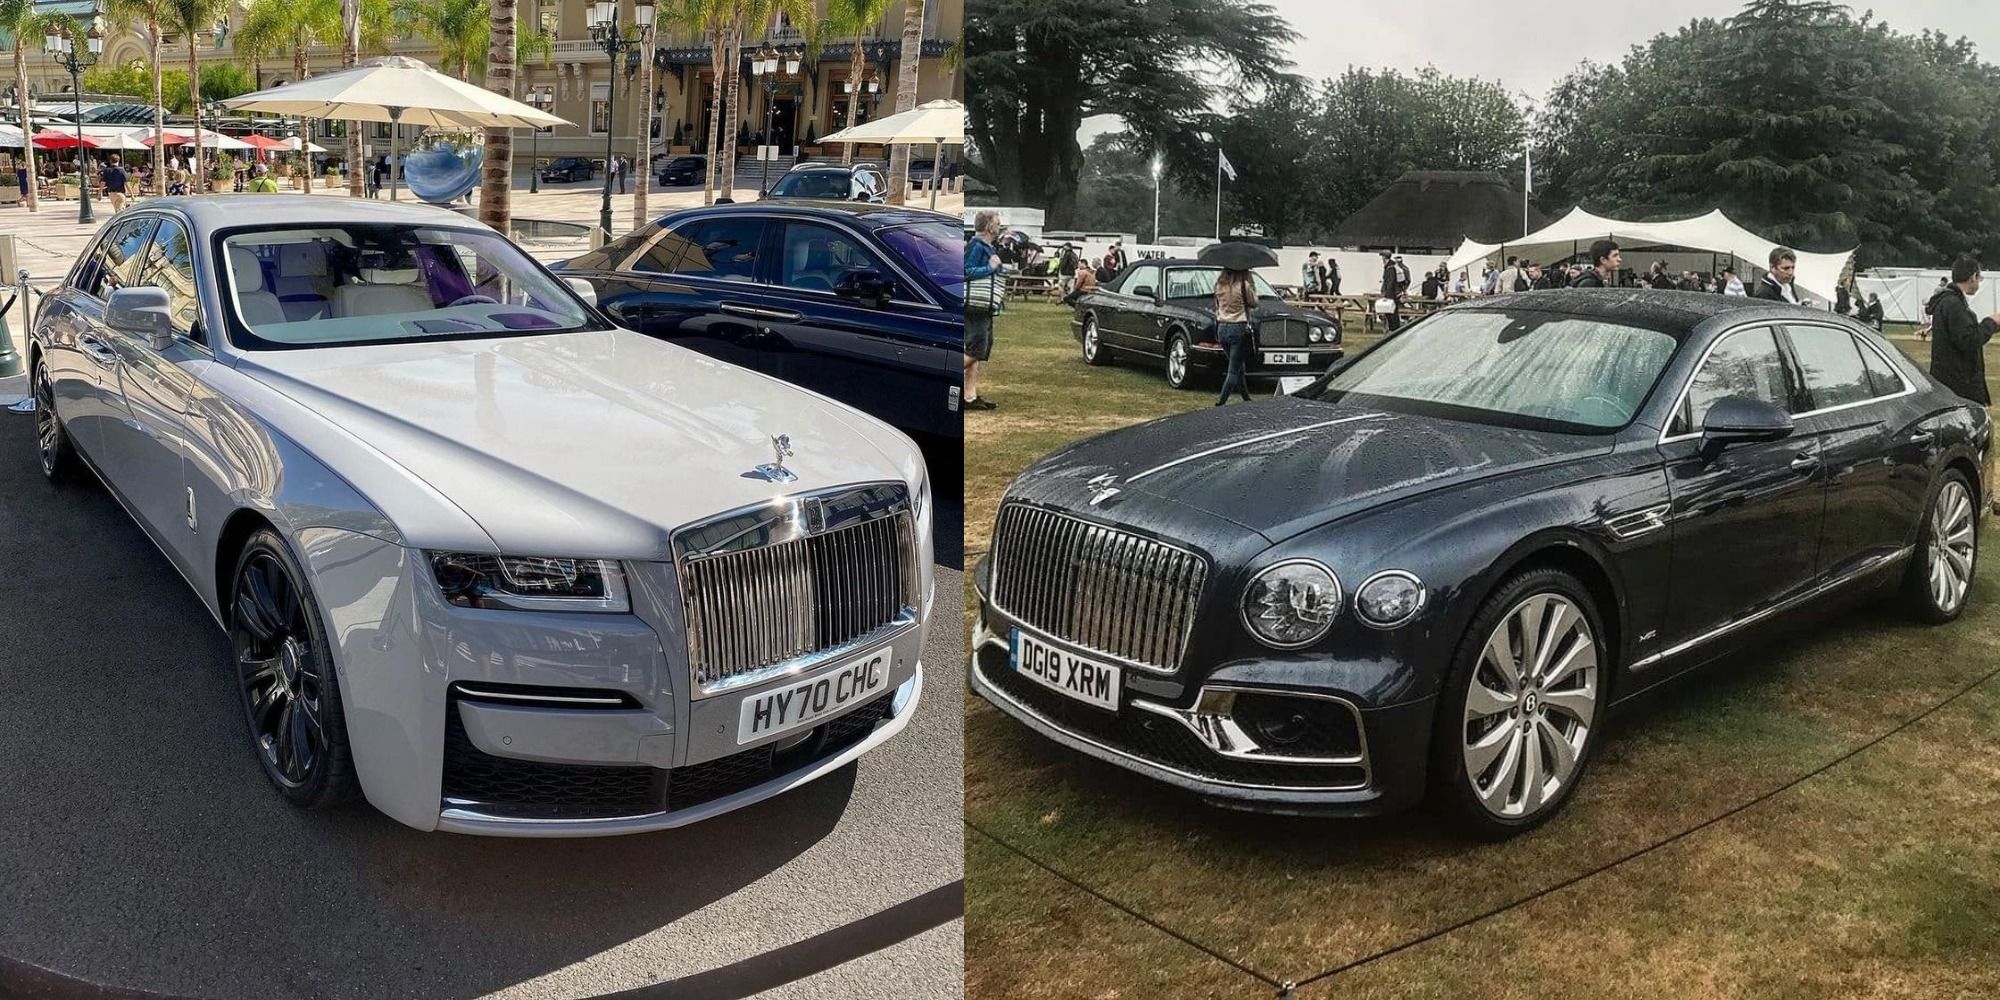 Bentley Mulsanne vs RollsRoyce Ghost